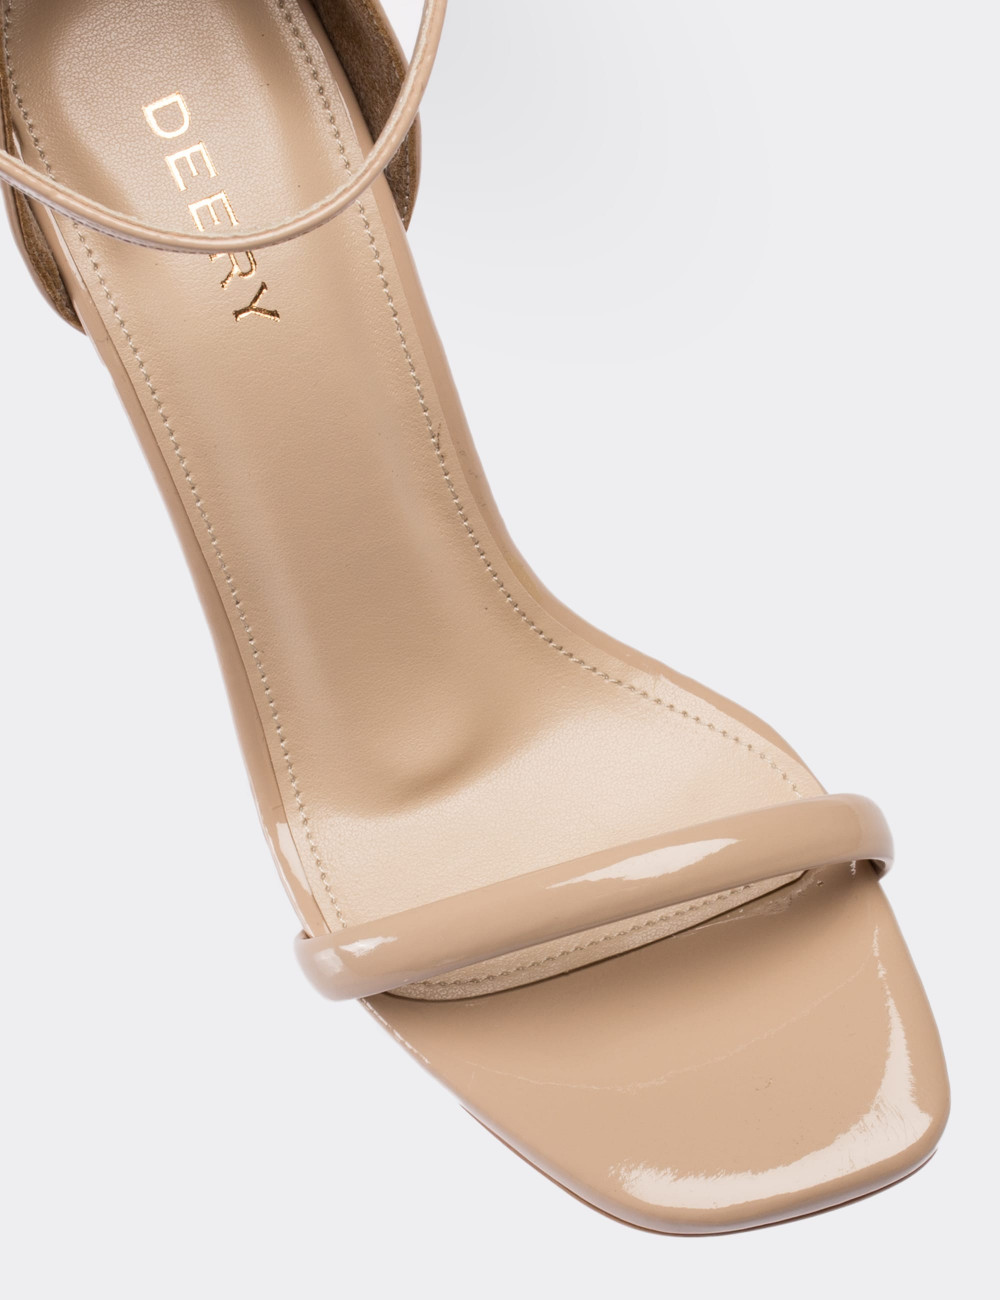 Bej Rengi Abiye Topuklu Kadın Ayakkabı - C0232ZBEJM01